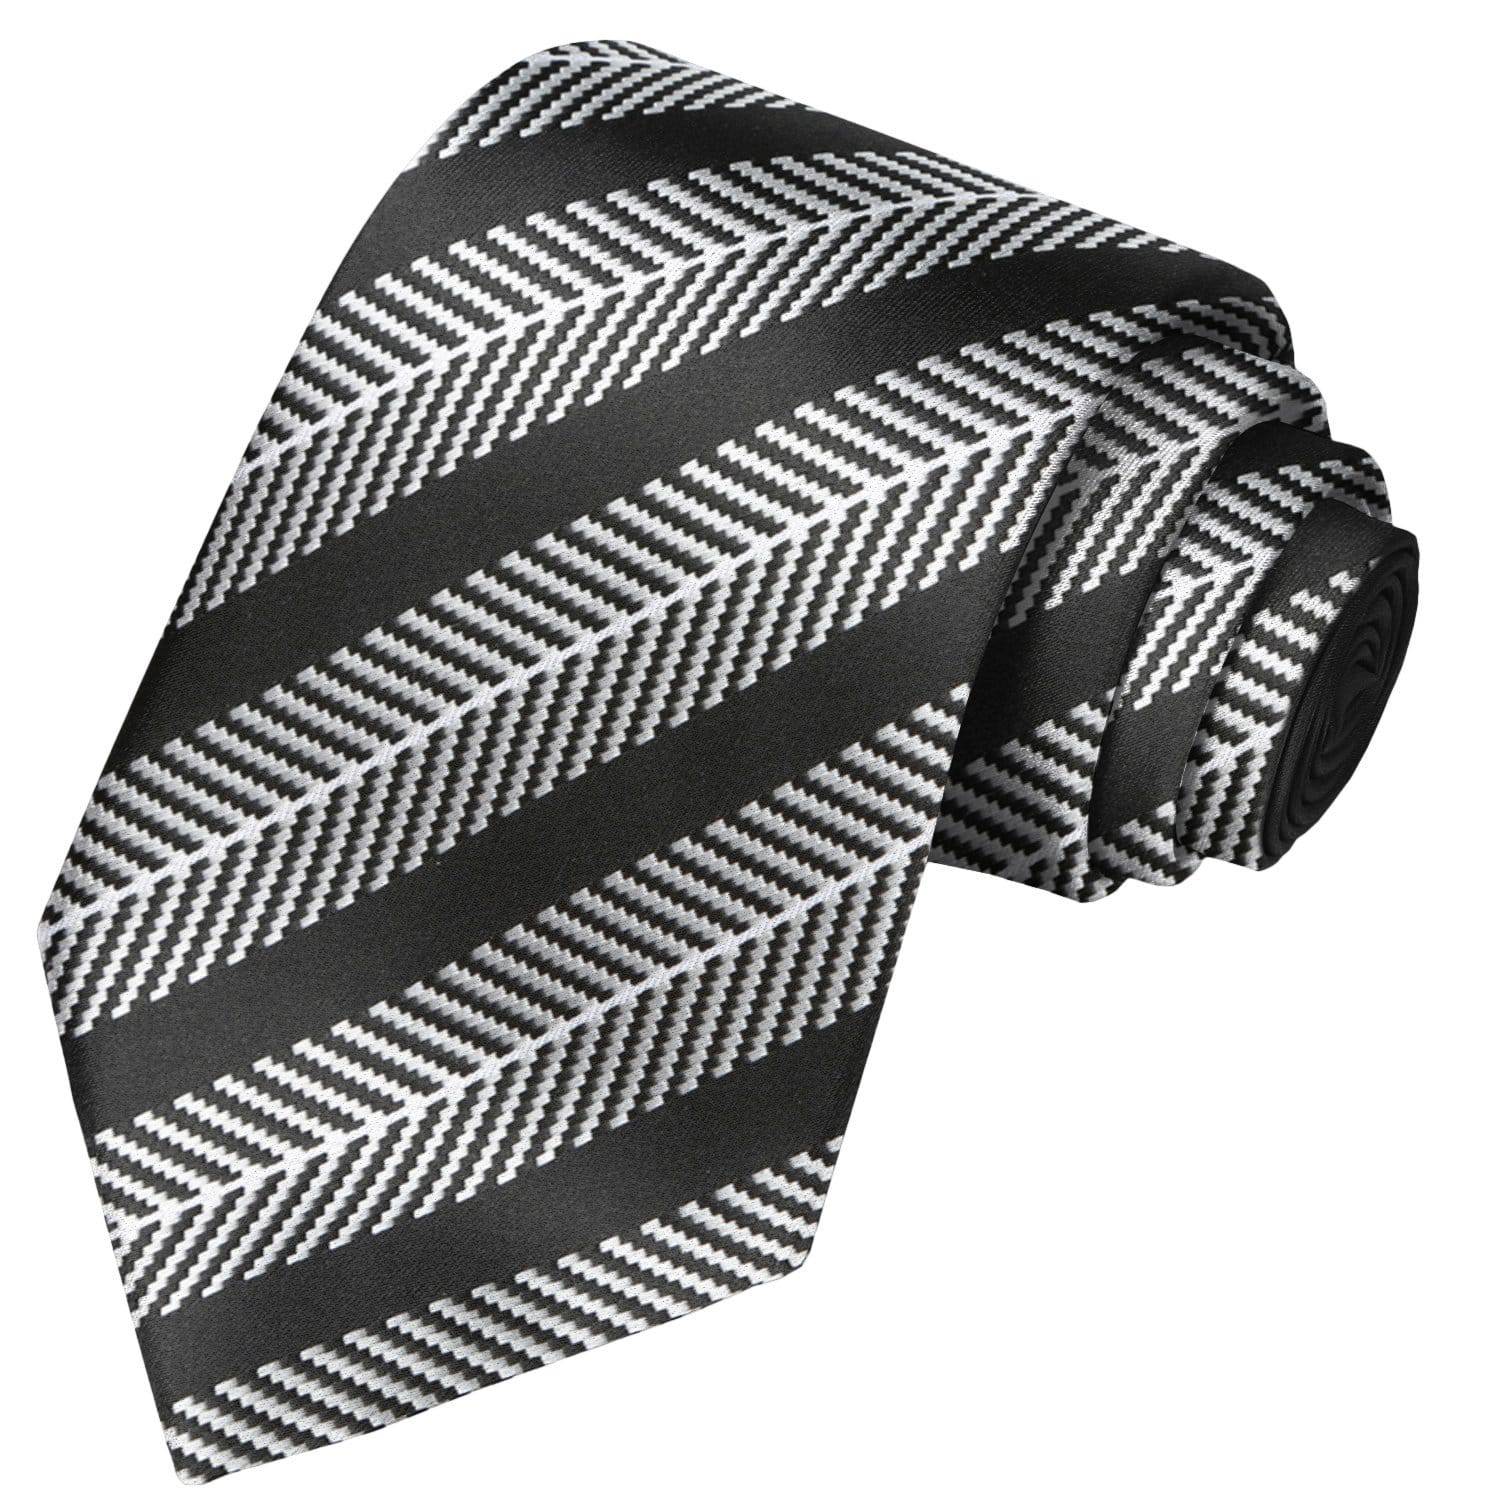 White on White Chevron-Black Striped Tie - Tie, bowtie, pocket square  | Kissties